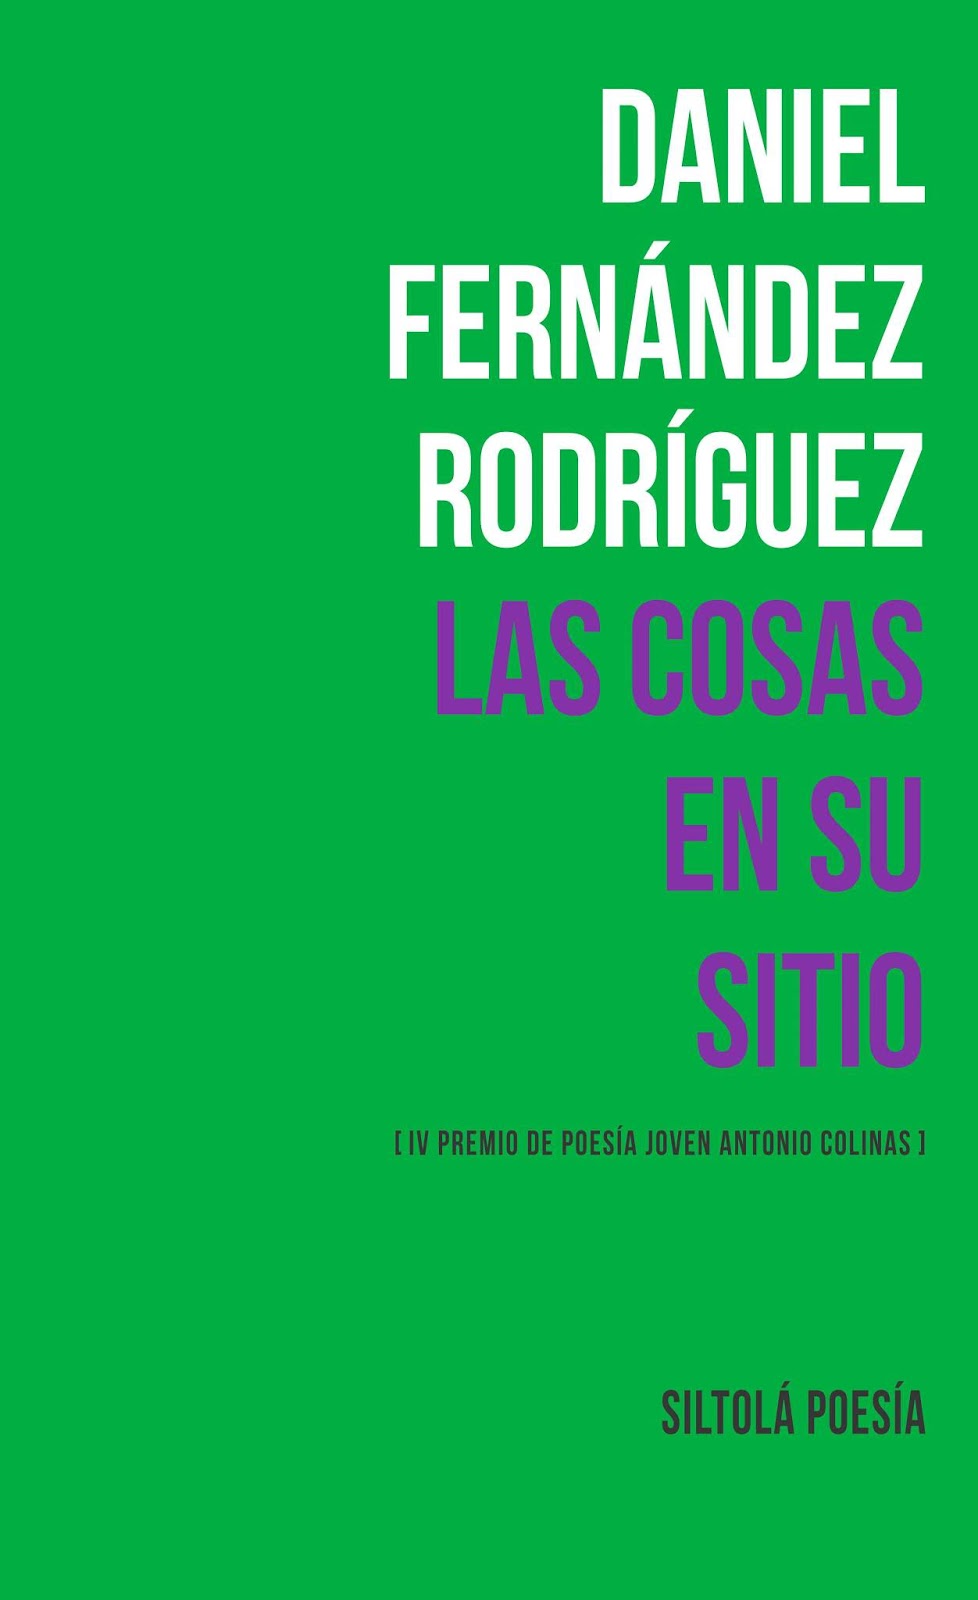 5 poemas de Daniel Fernández Rodríguez